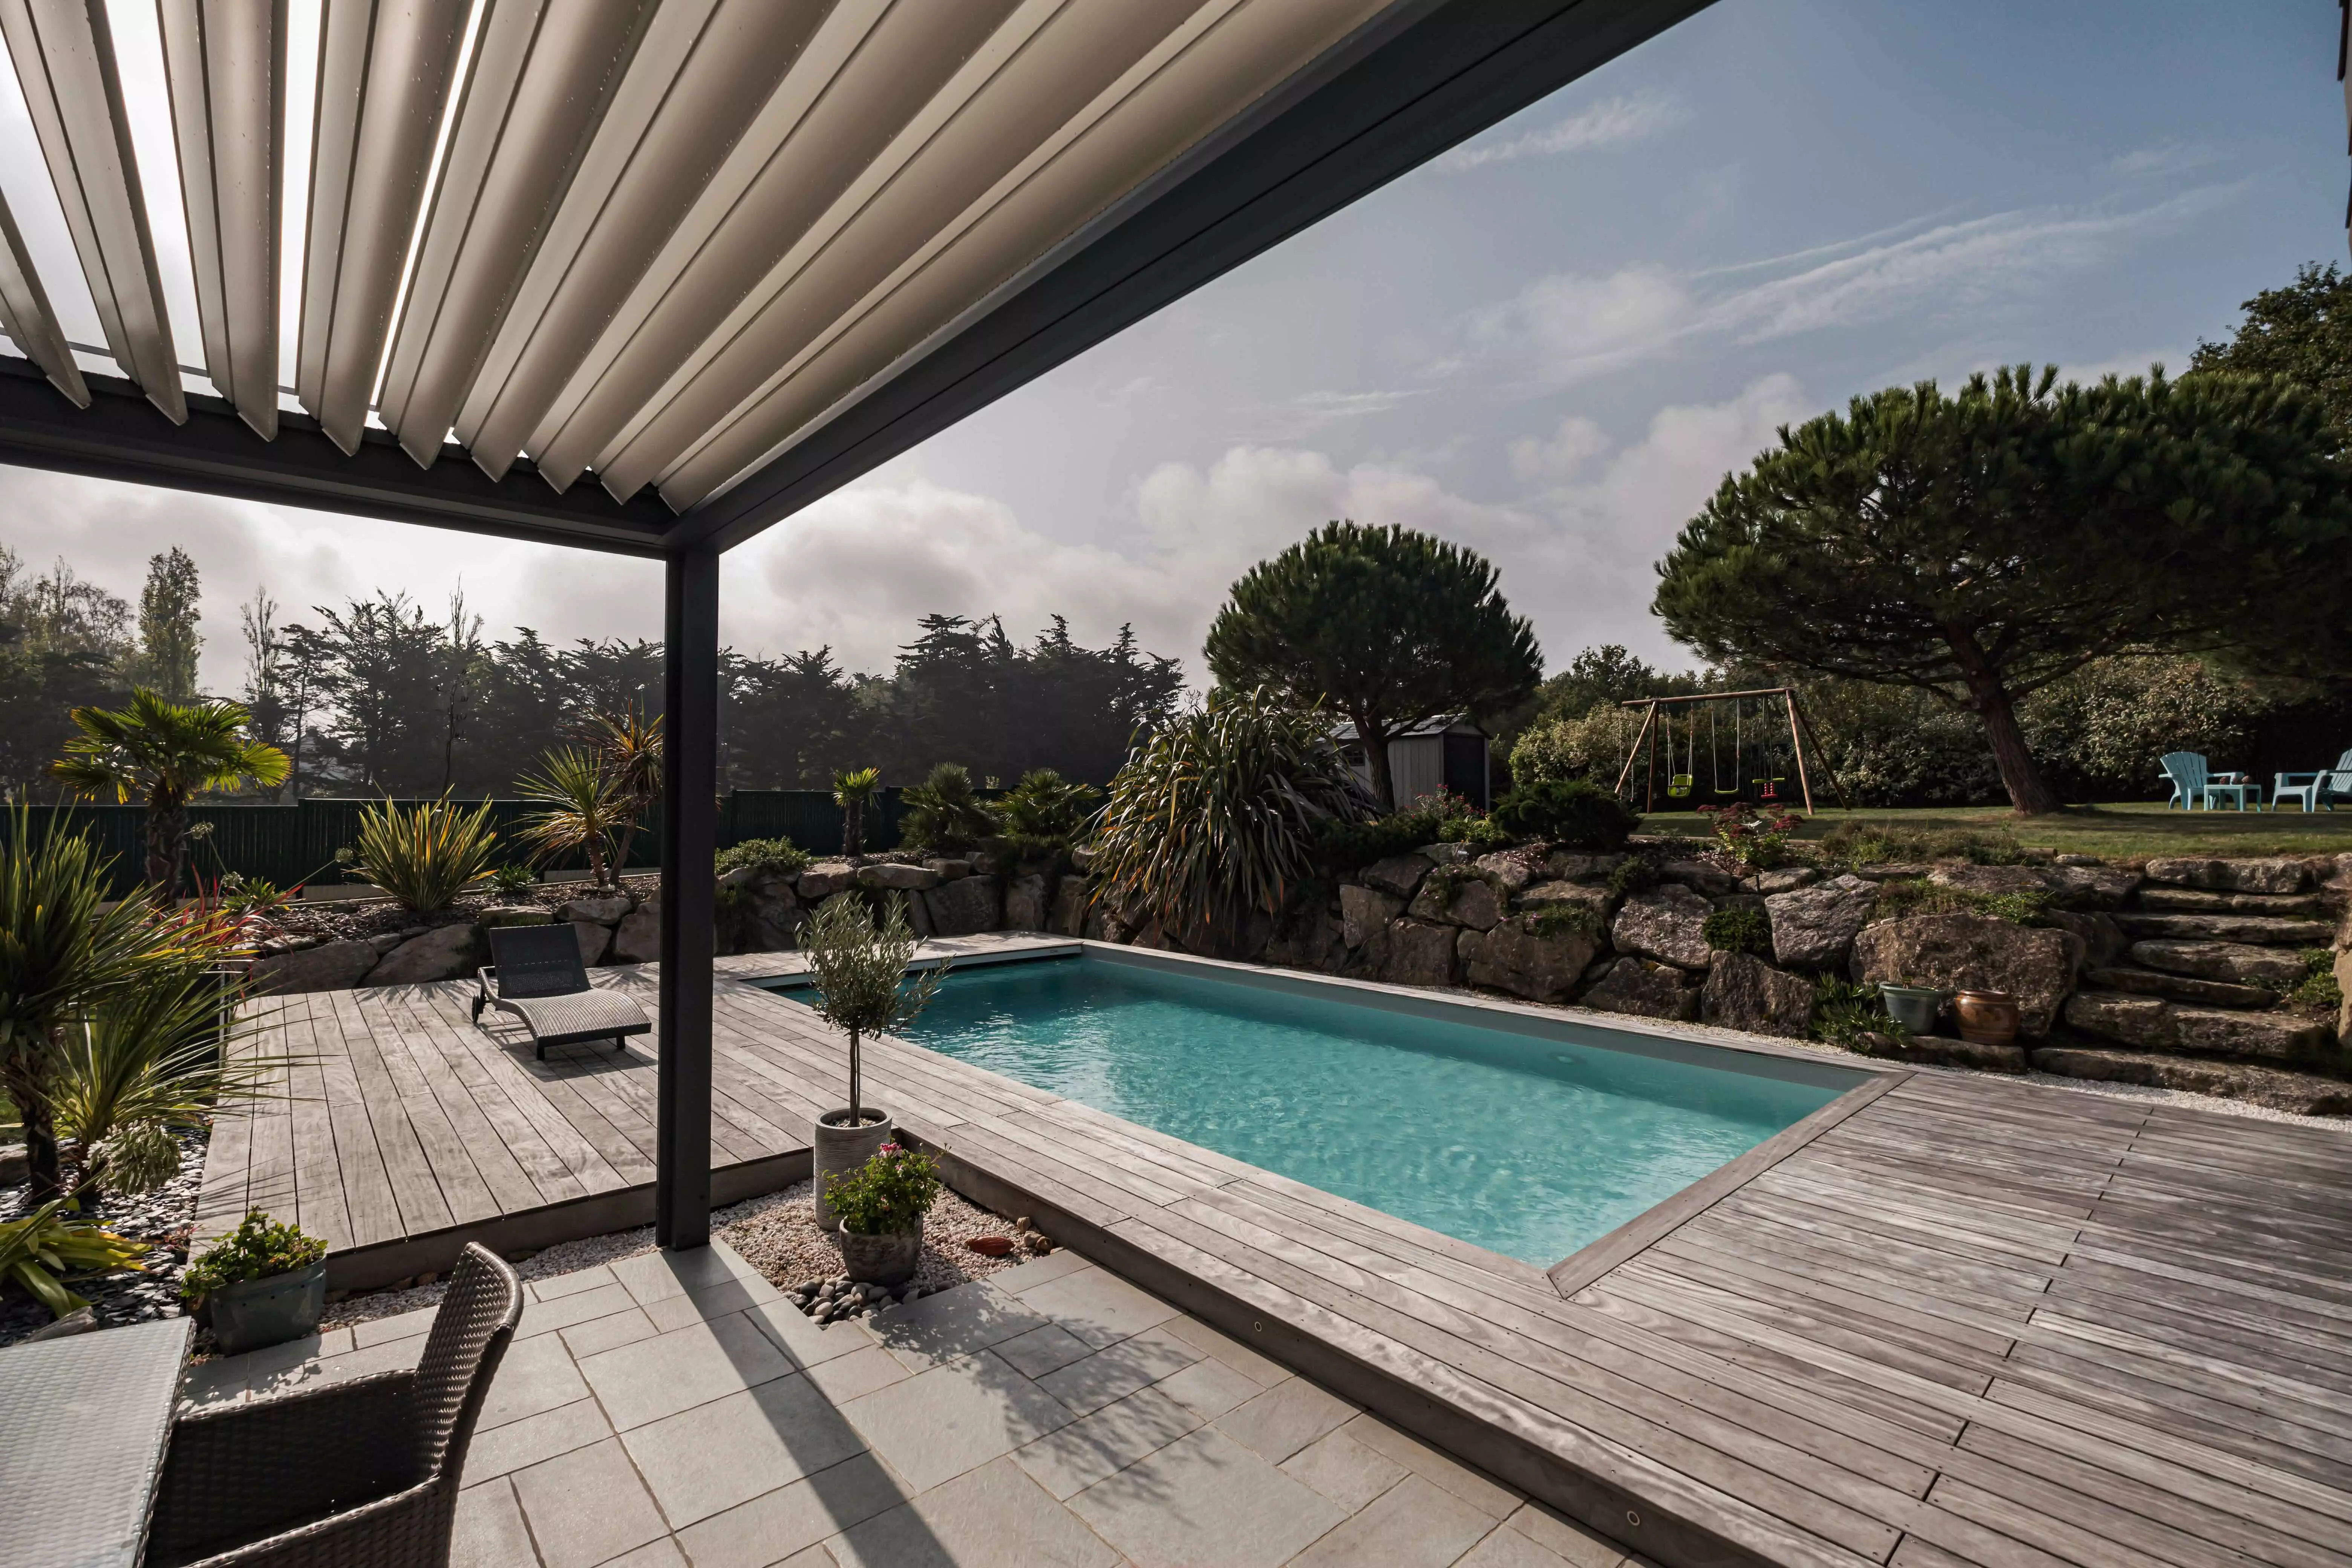 Une demeure moderne avec la piscine en vedette, bordée d'une terrasse qui s'étend vers un paysage rocheux enrichi de plantes exotiques.